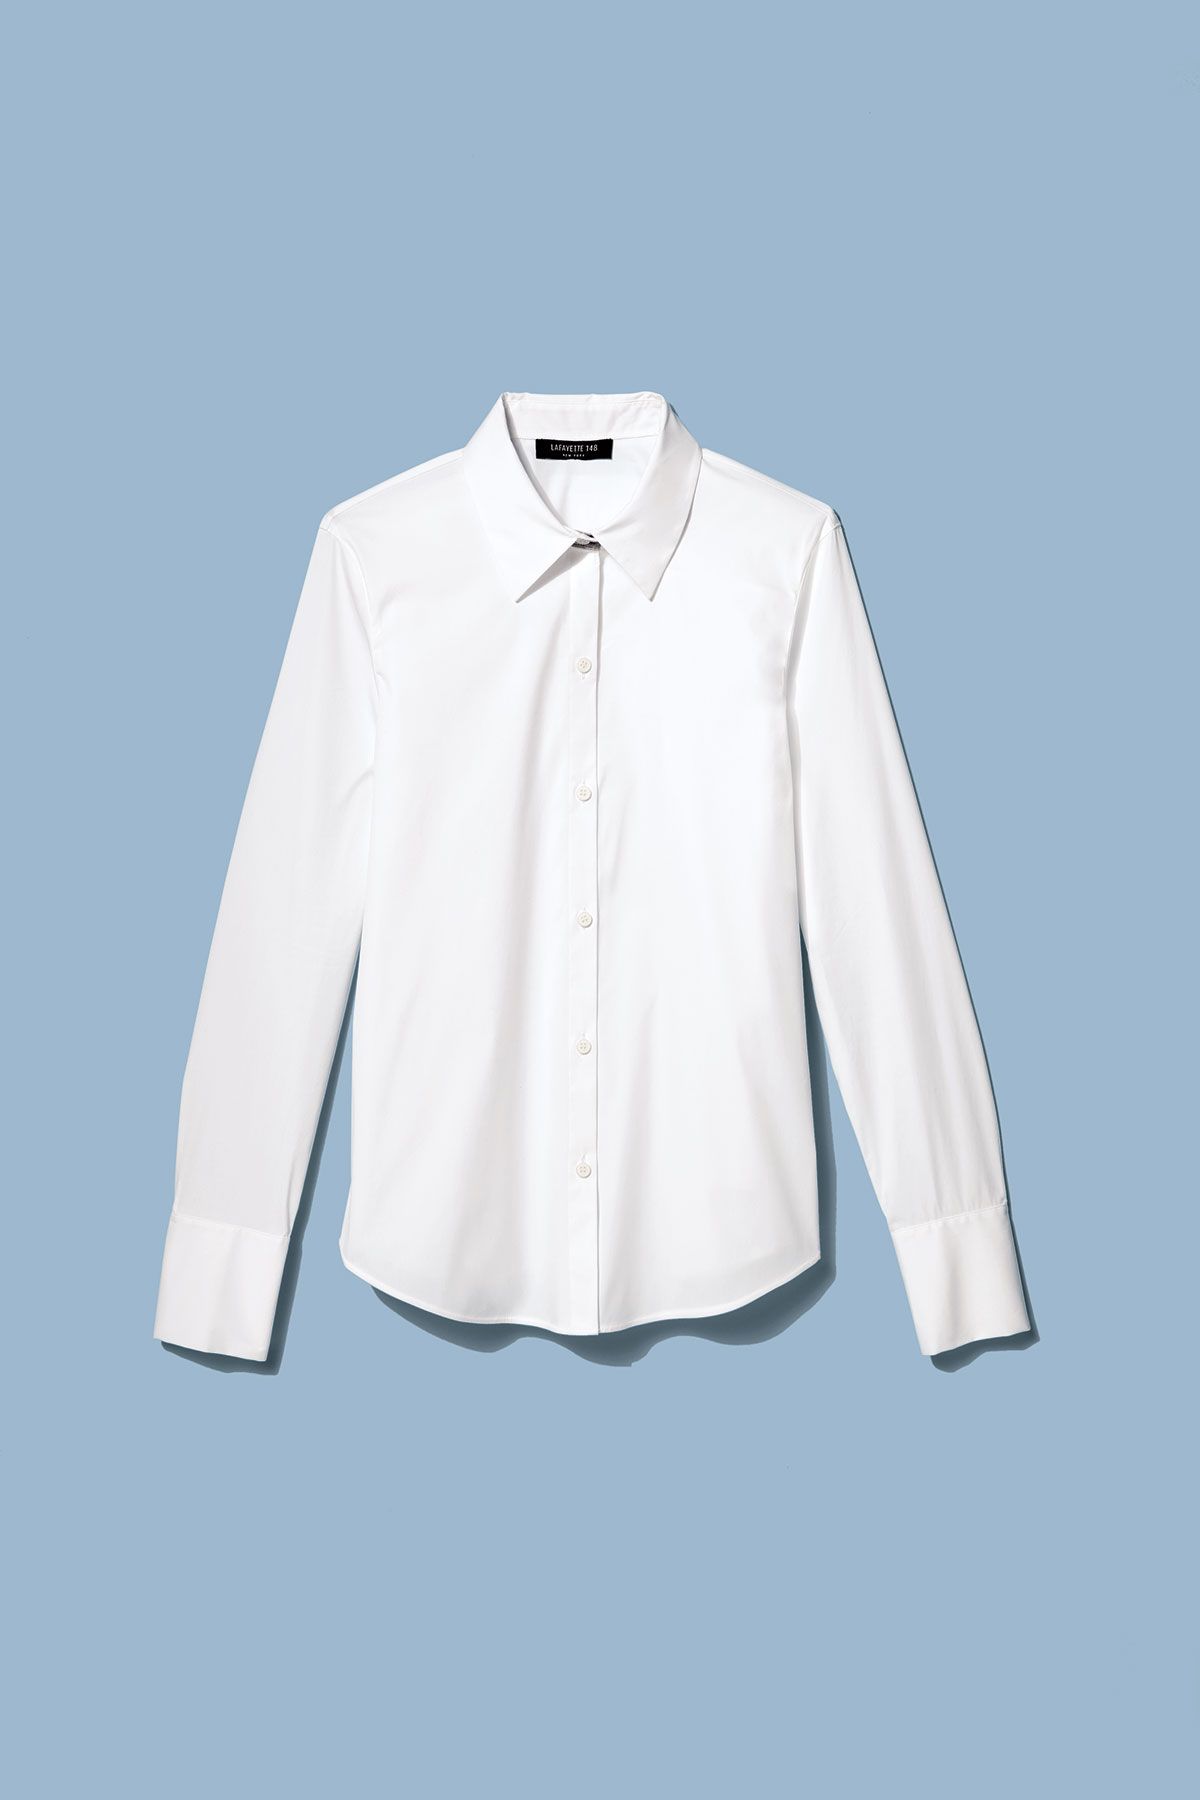 10 parasta valkoista paitaa, joita olemme koskaan käyttäneet